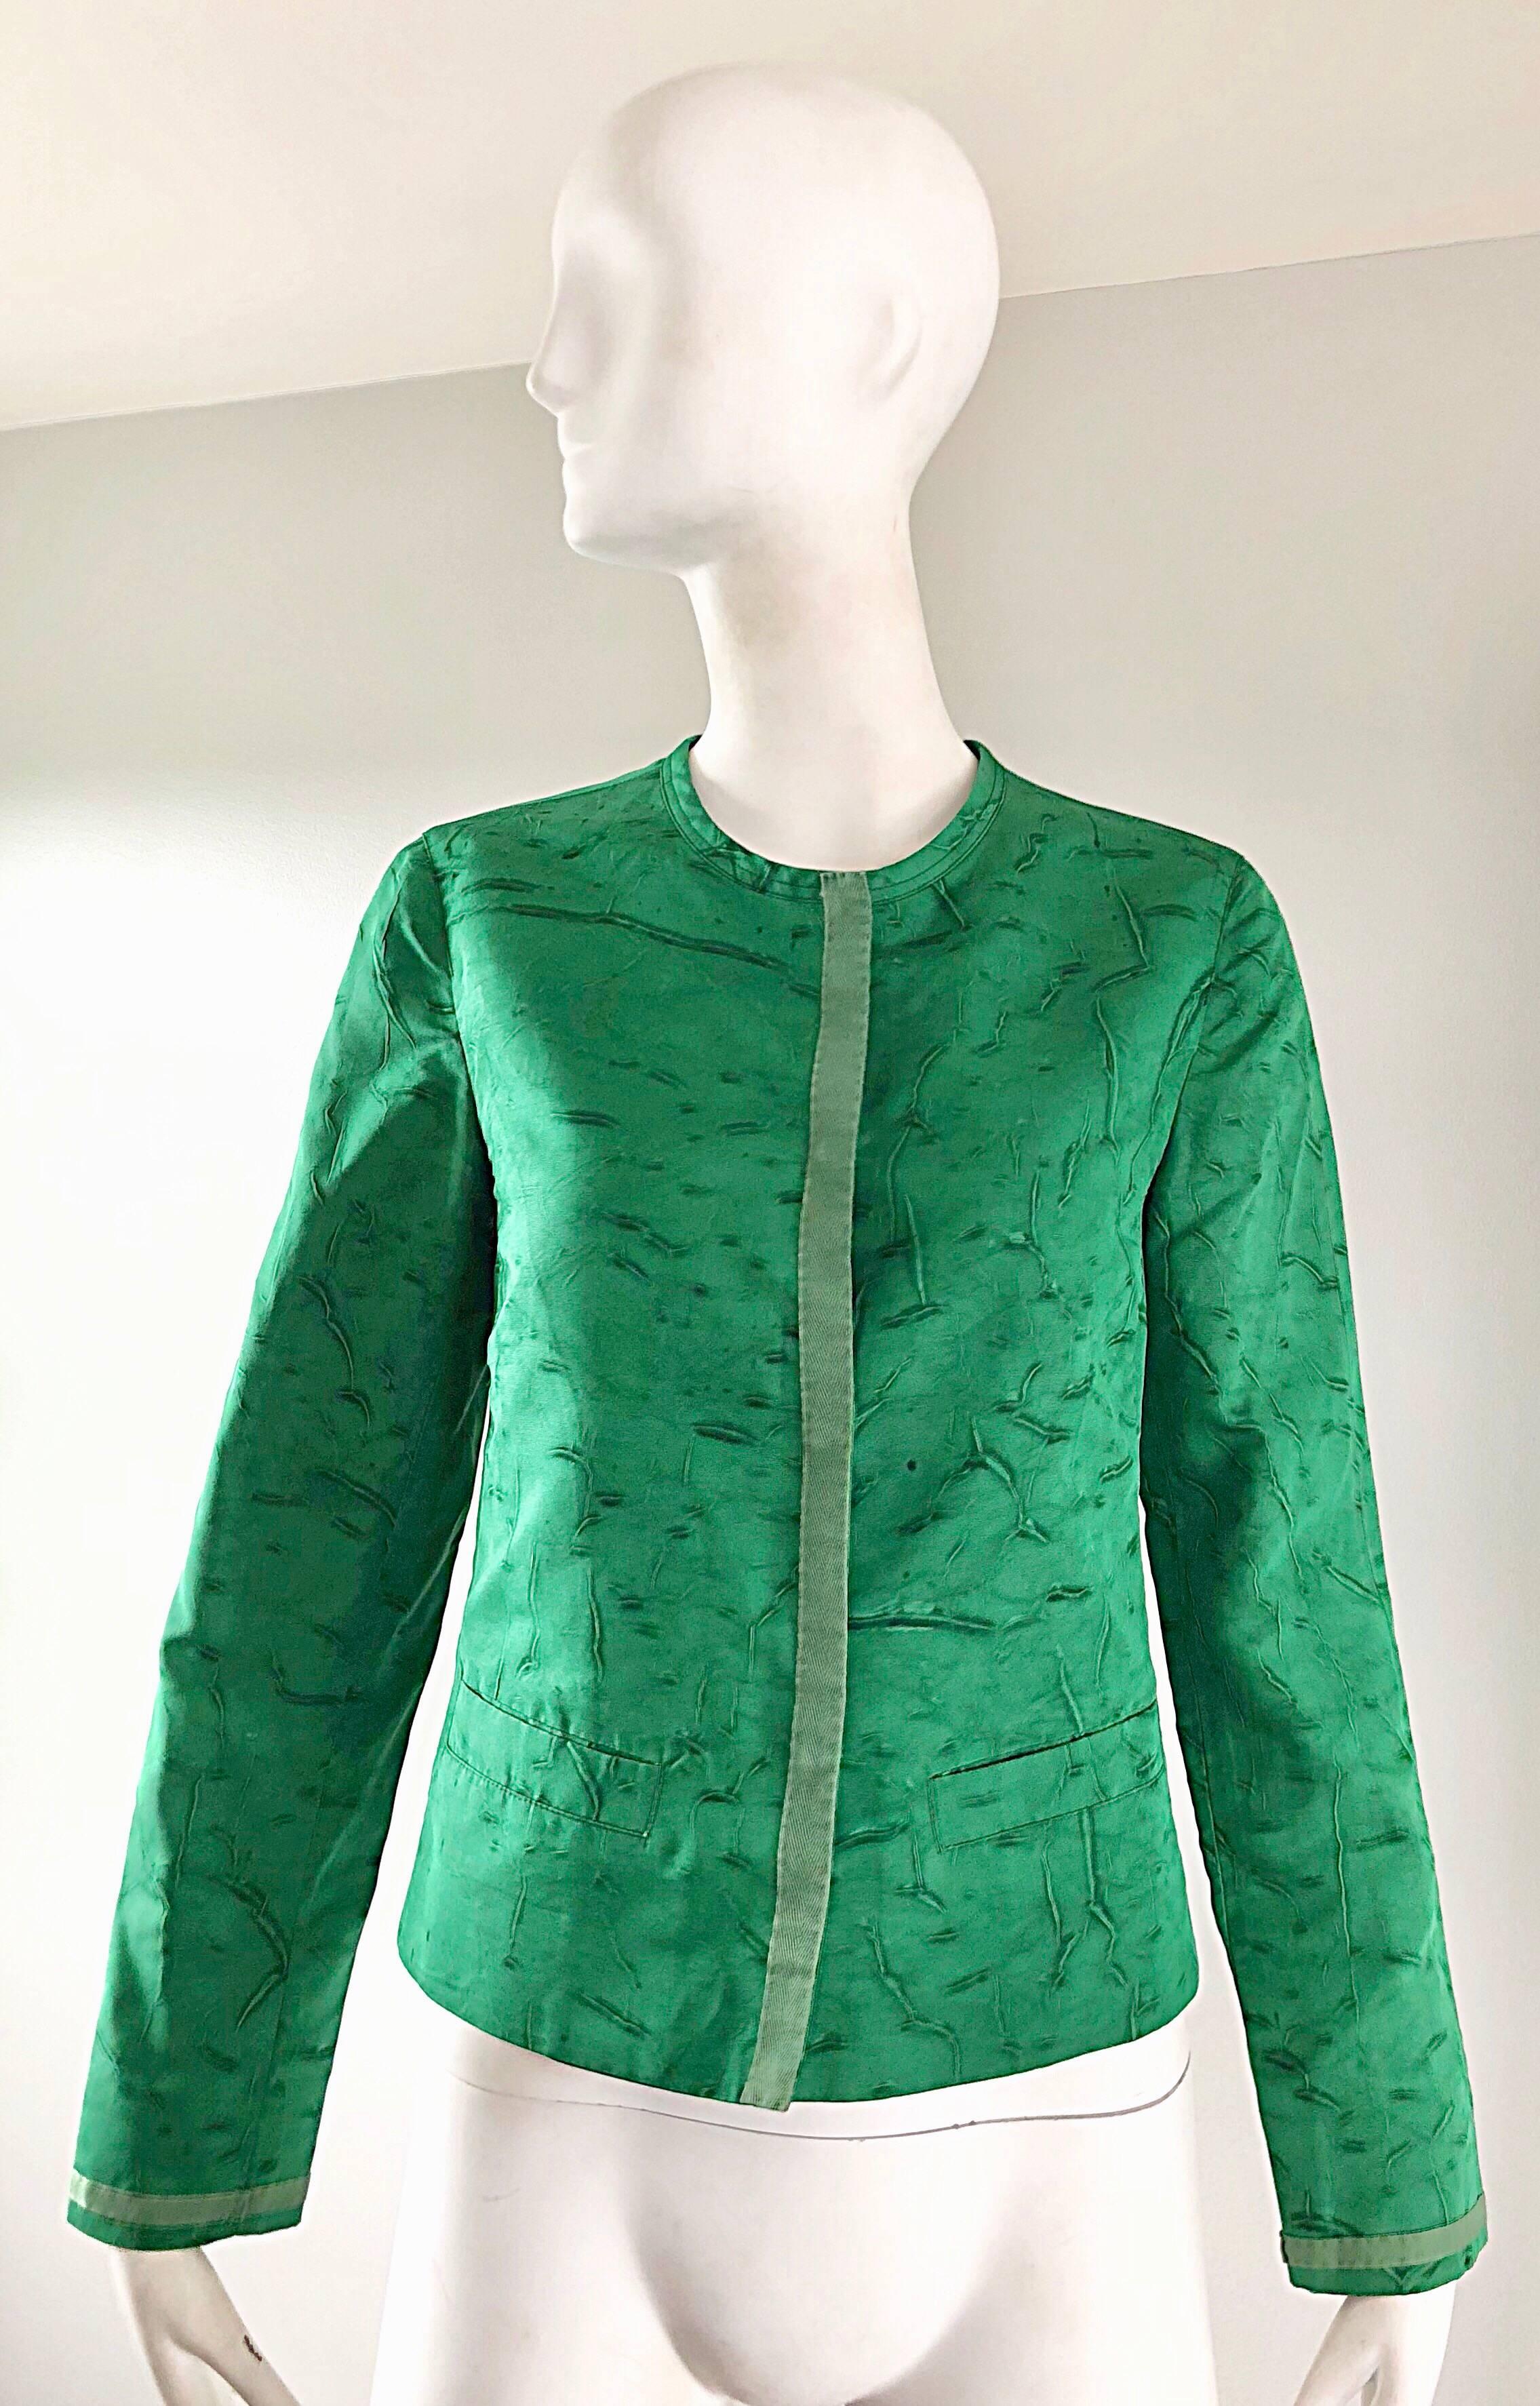 Classique, avec un twist, fin des années 1990 fait 1960 PRADA kelly green léger tie-dyed jacket ! Coupe pillbox avec un corsage ajusté et un corps légèrement évasé. Boutons-pression cachés sur le devant. Garniture en gros-grain de soie au centre du